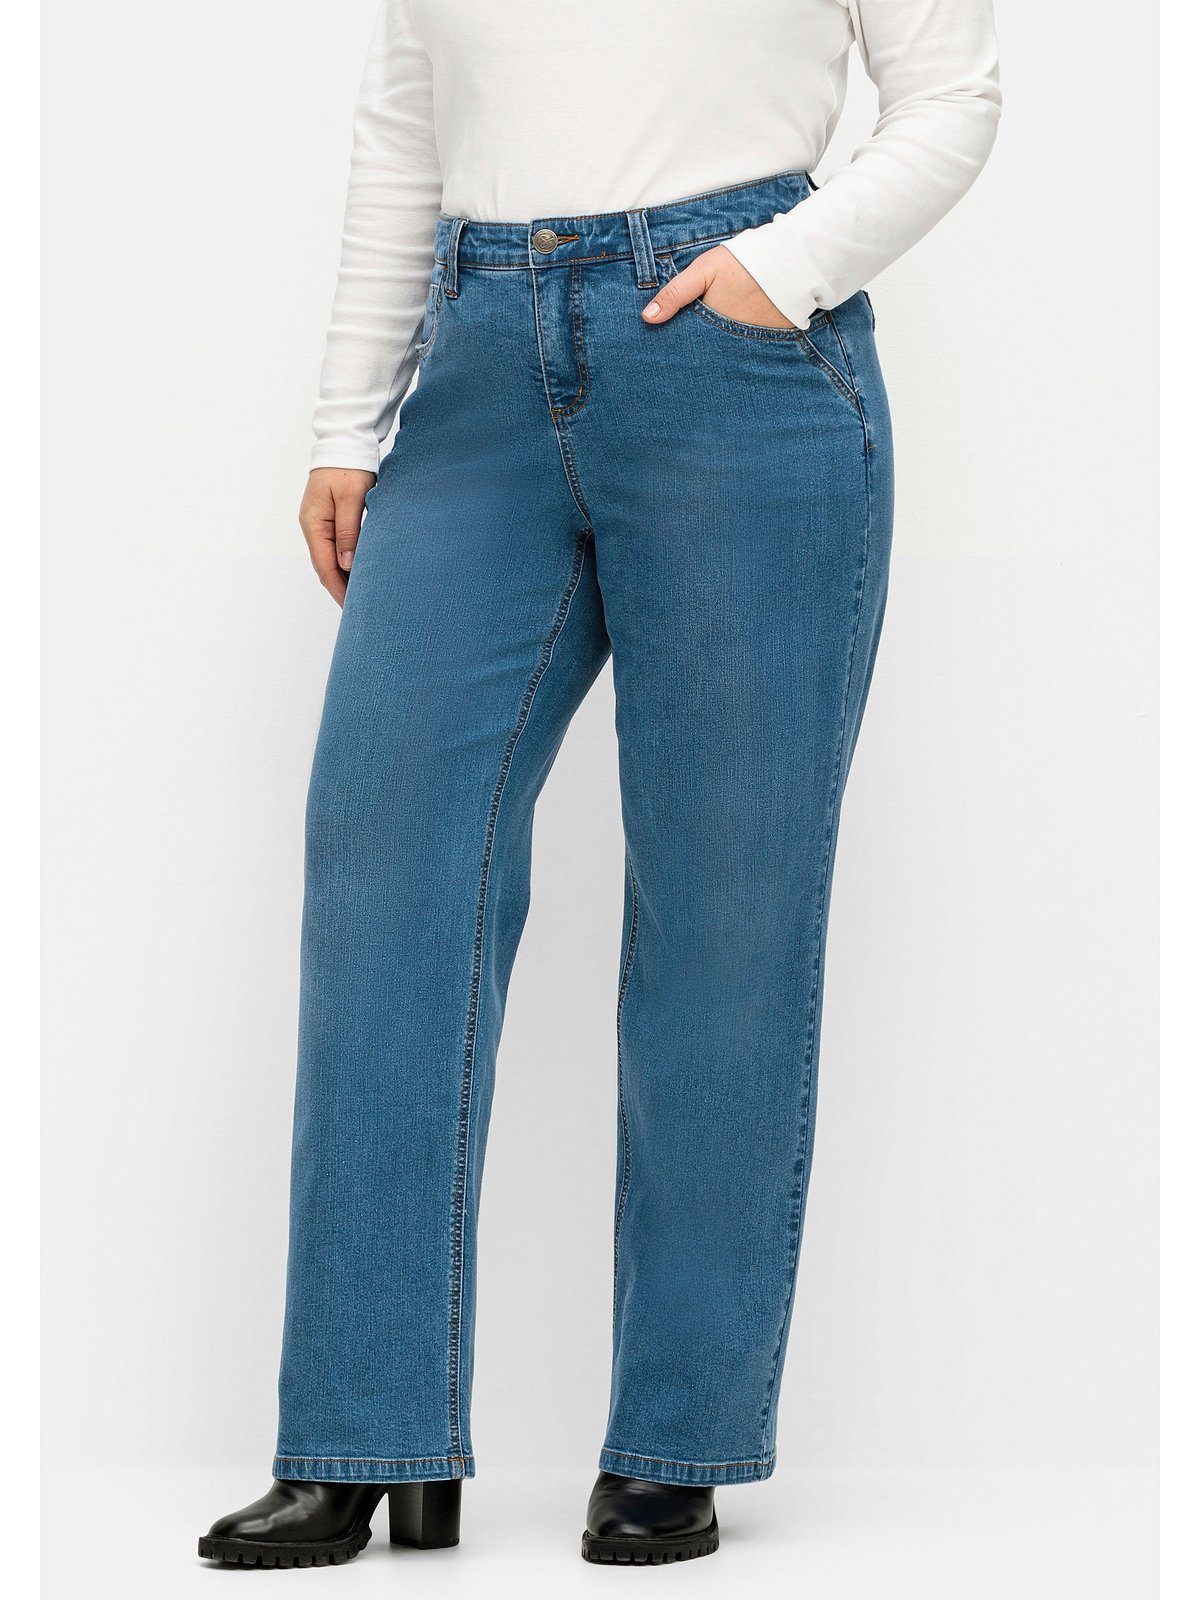 Waden kräftige Große Jeans Denim Weite und Oberschenkel ELLA für Sheego blue Größen